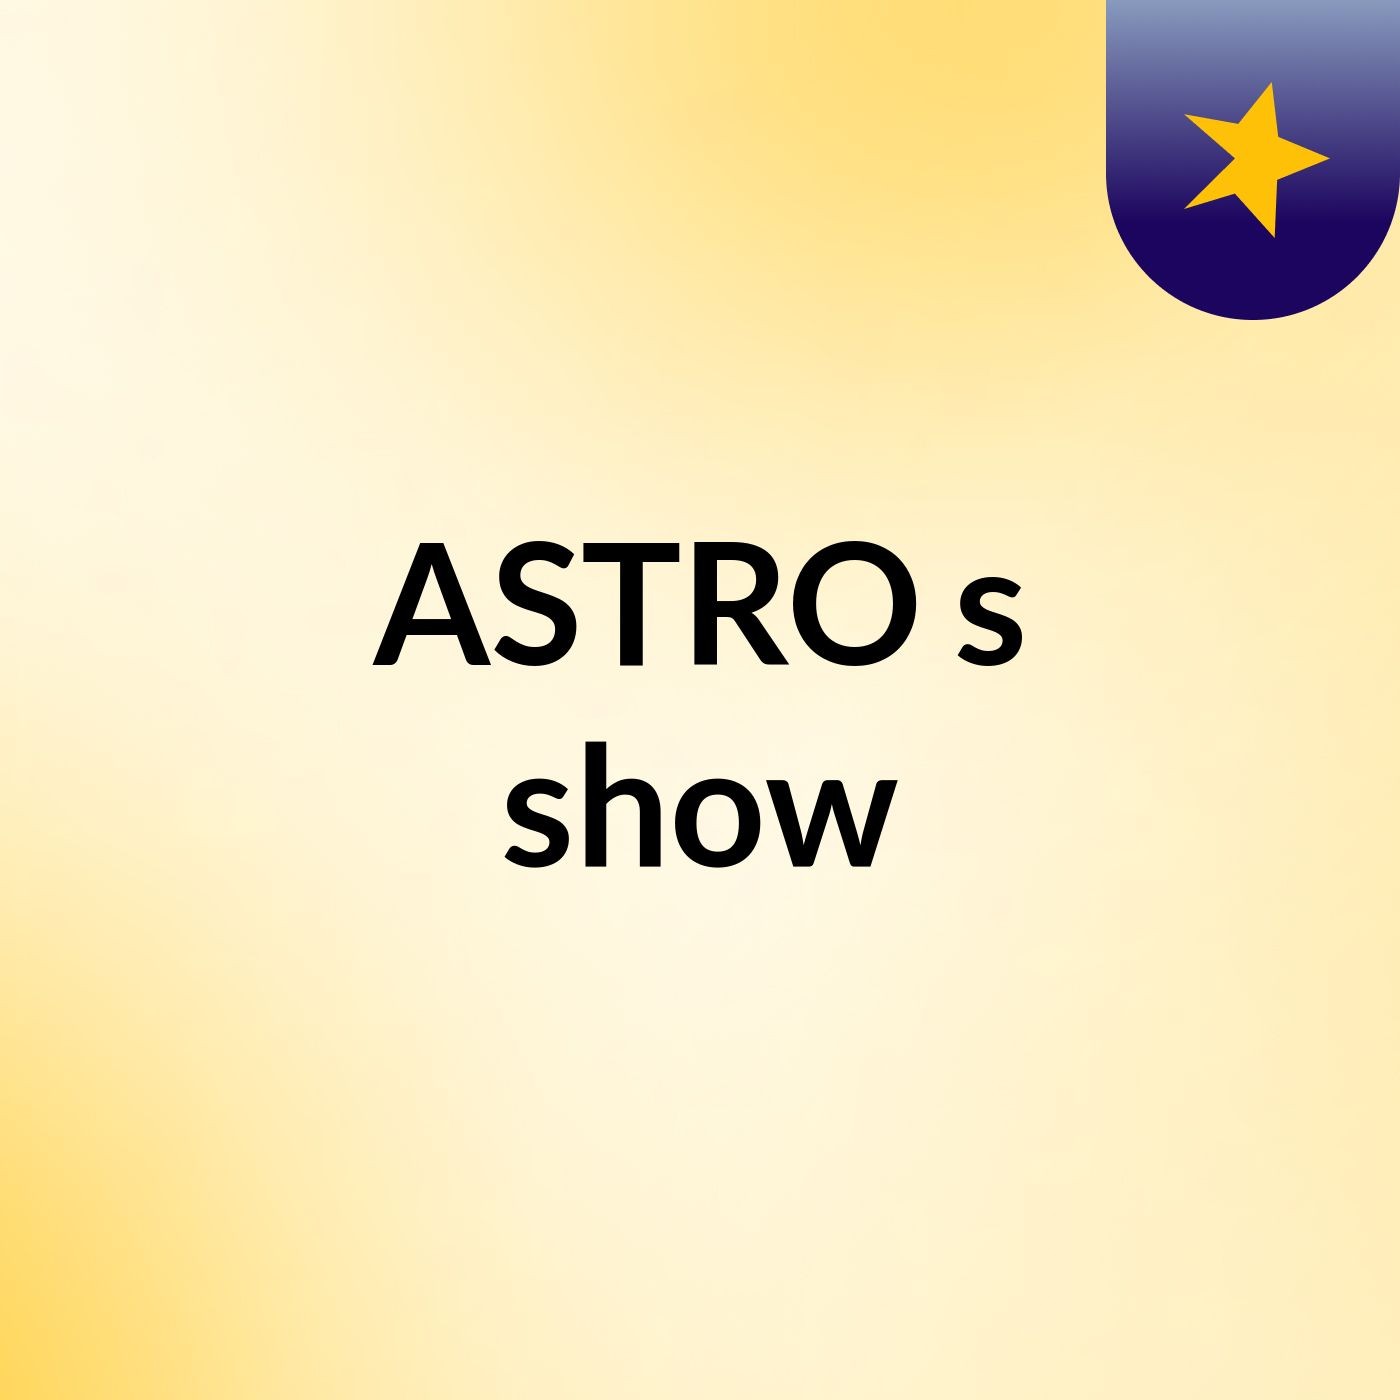 ASTRO's show